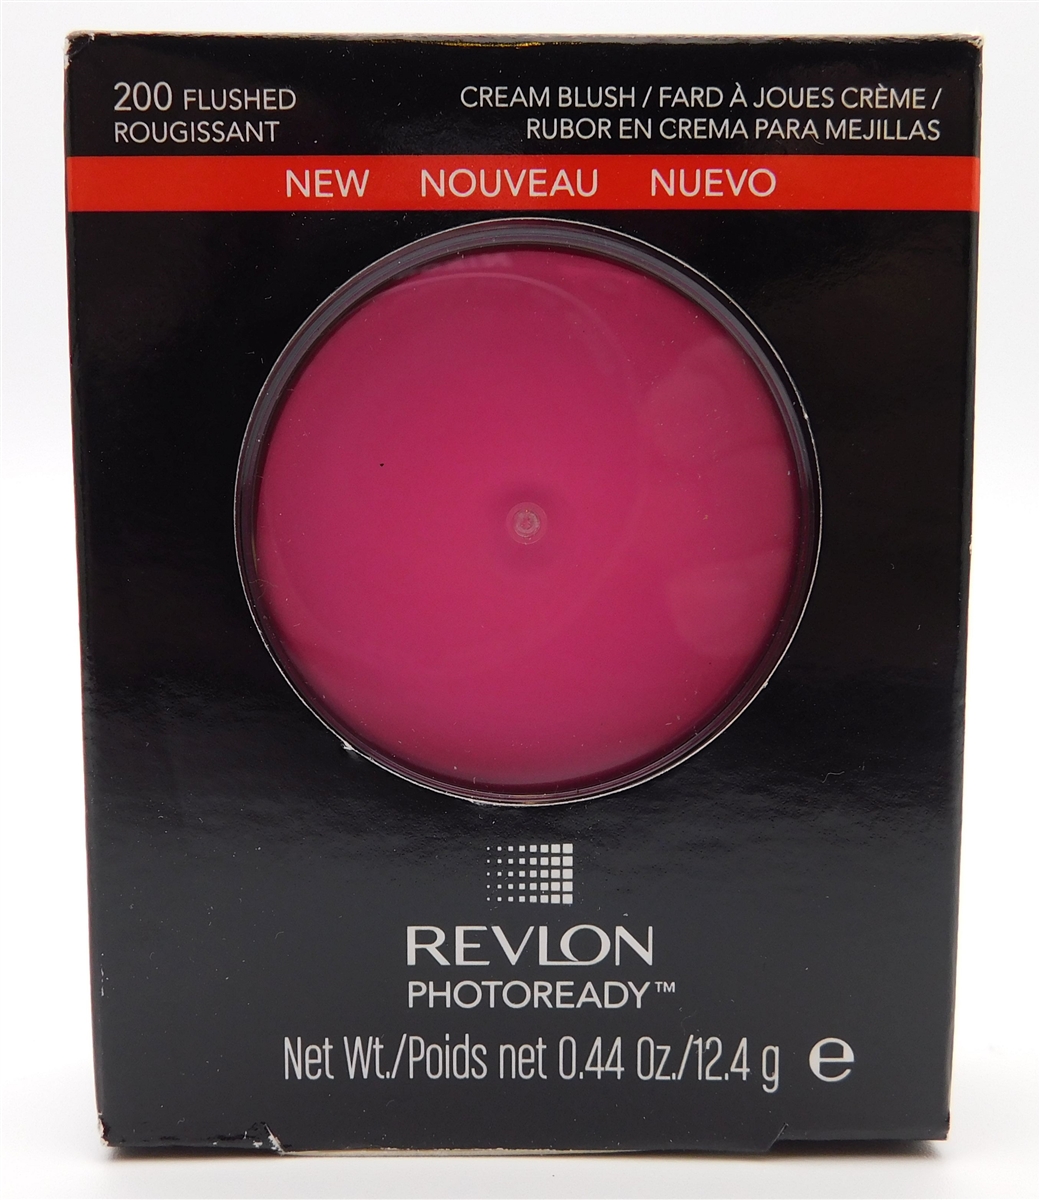 Revlon Photoready Cream Blush 200 Flushed - image 1 of 4